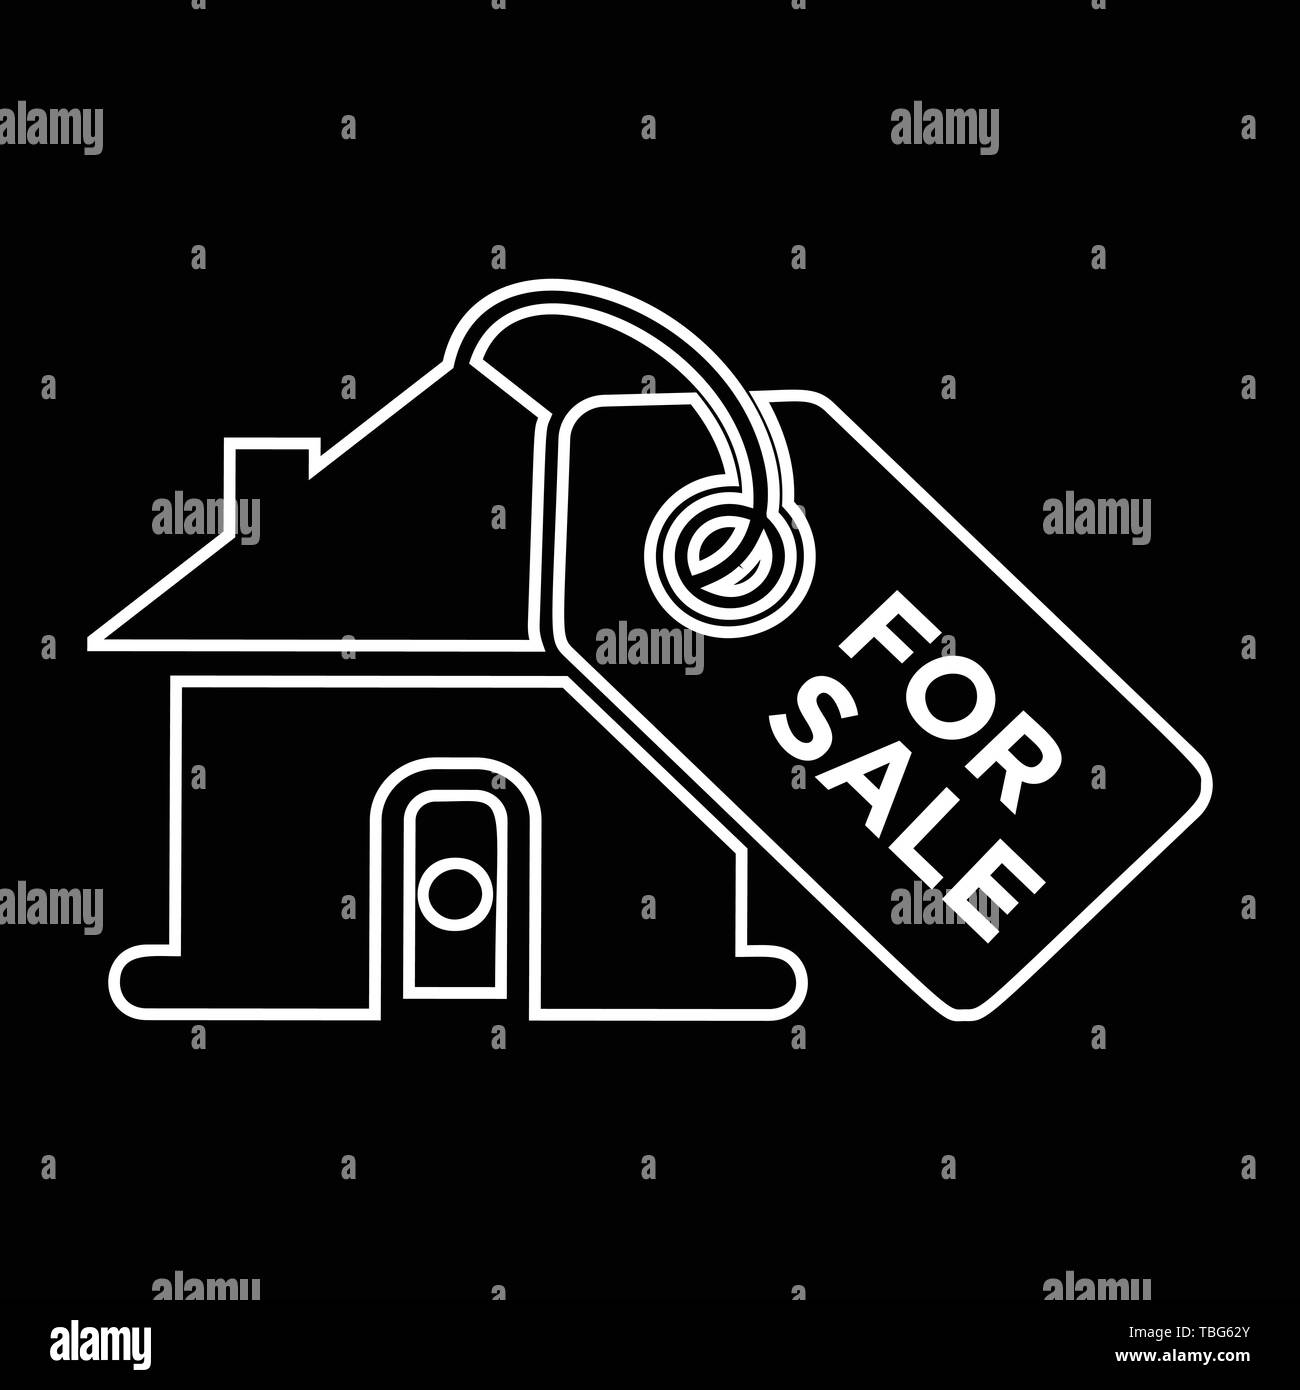 Home Verkauf Symbol - Immobilien Verkauf Zeichen Stock Vektor